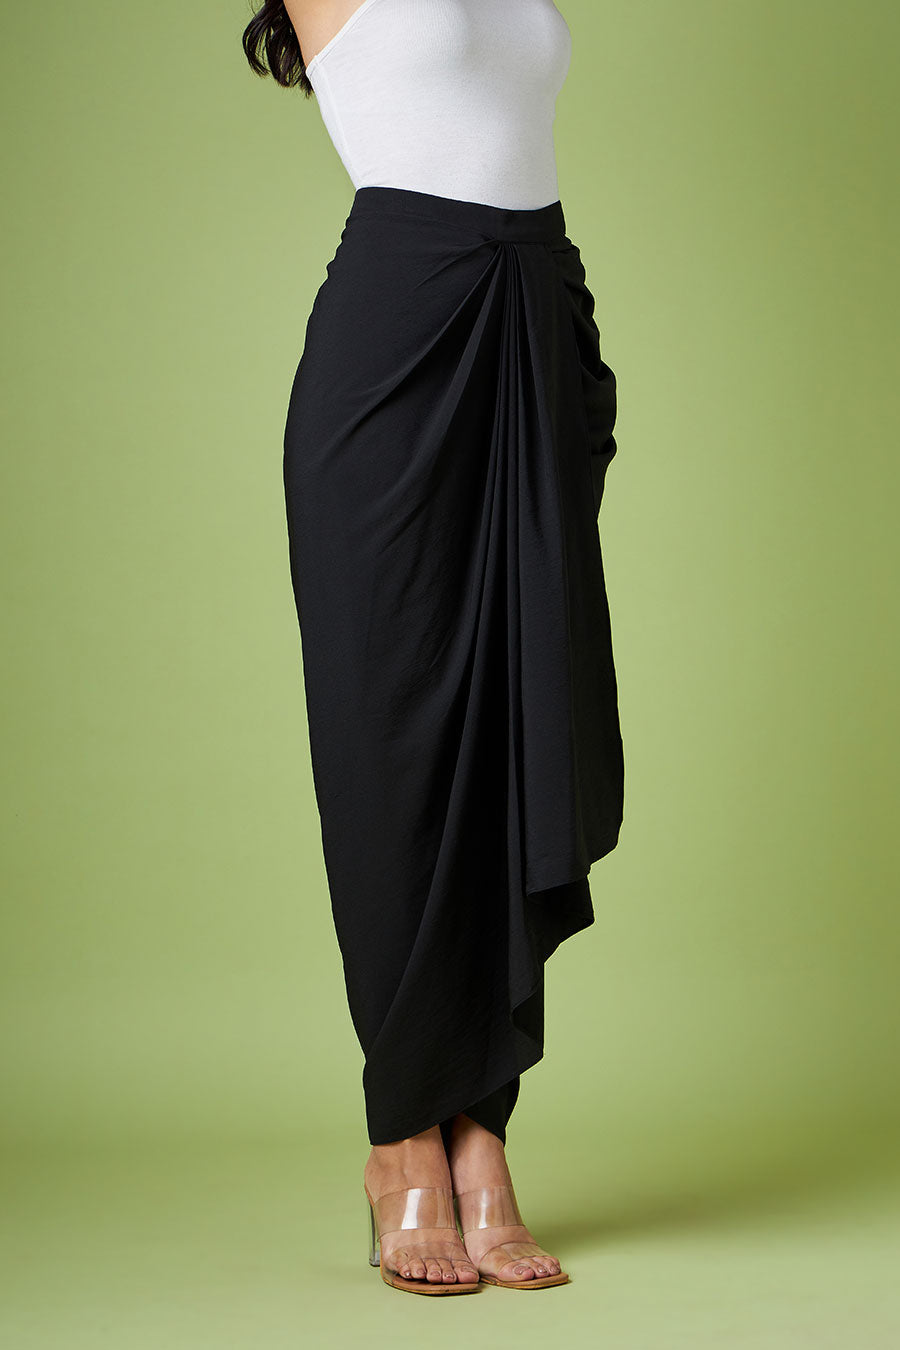 Black Drape Skirt